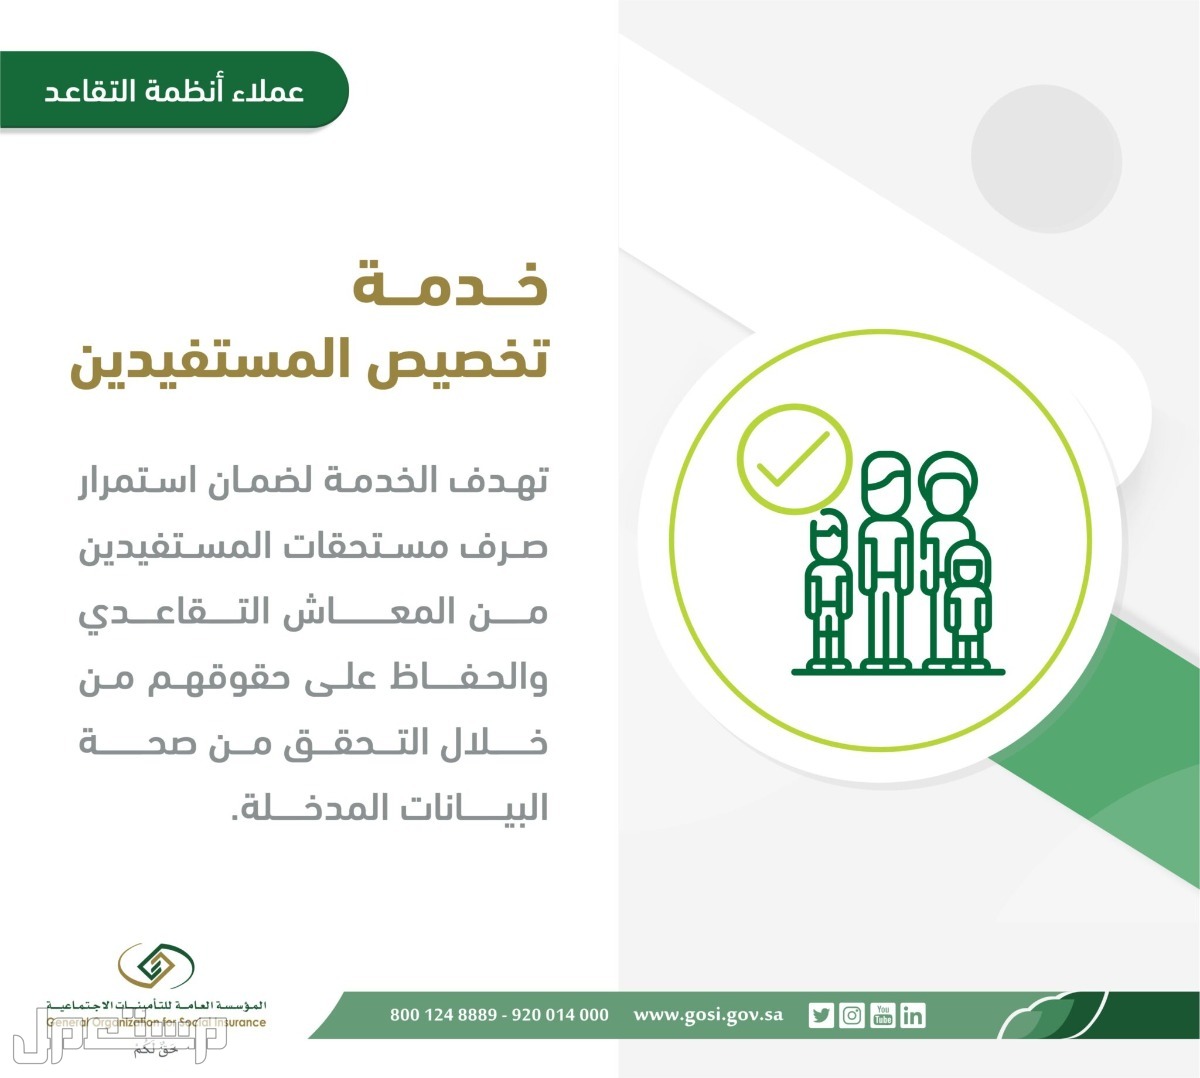 تعرف على خطوات تقديم طلب تخصيص المستفيدين المستحقين لتسوية المعاش في البحرين خدمة تخصيص المستفيدين